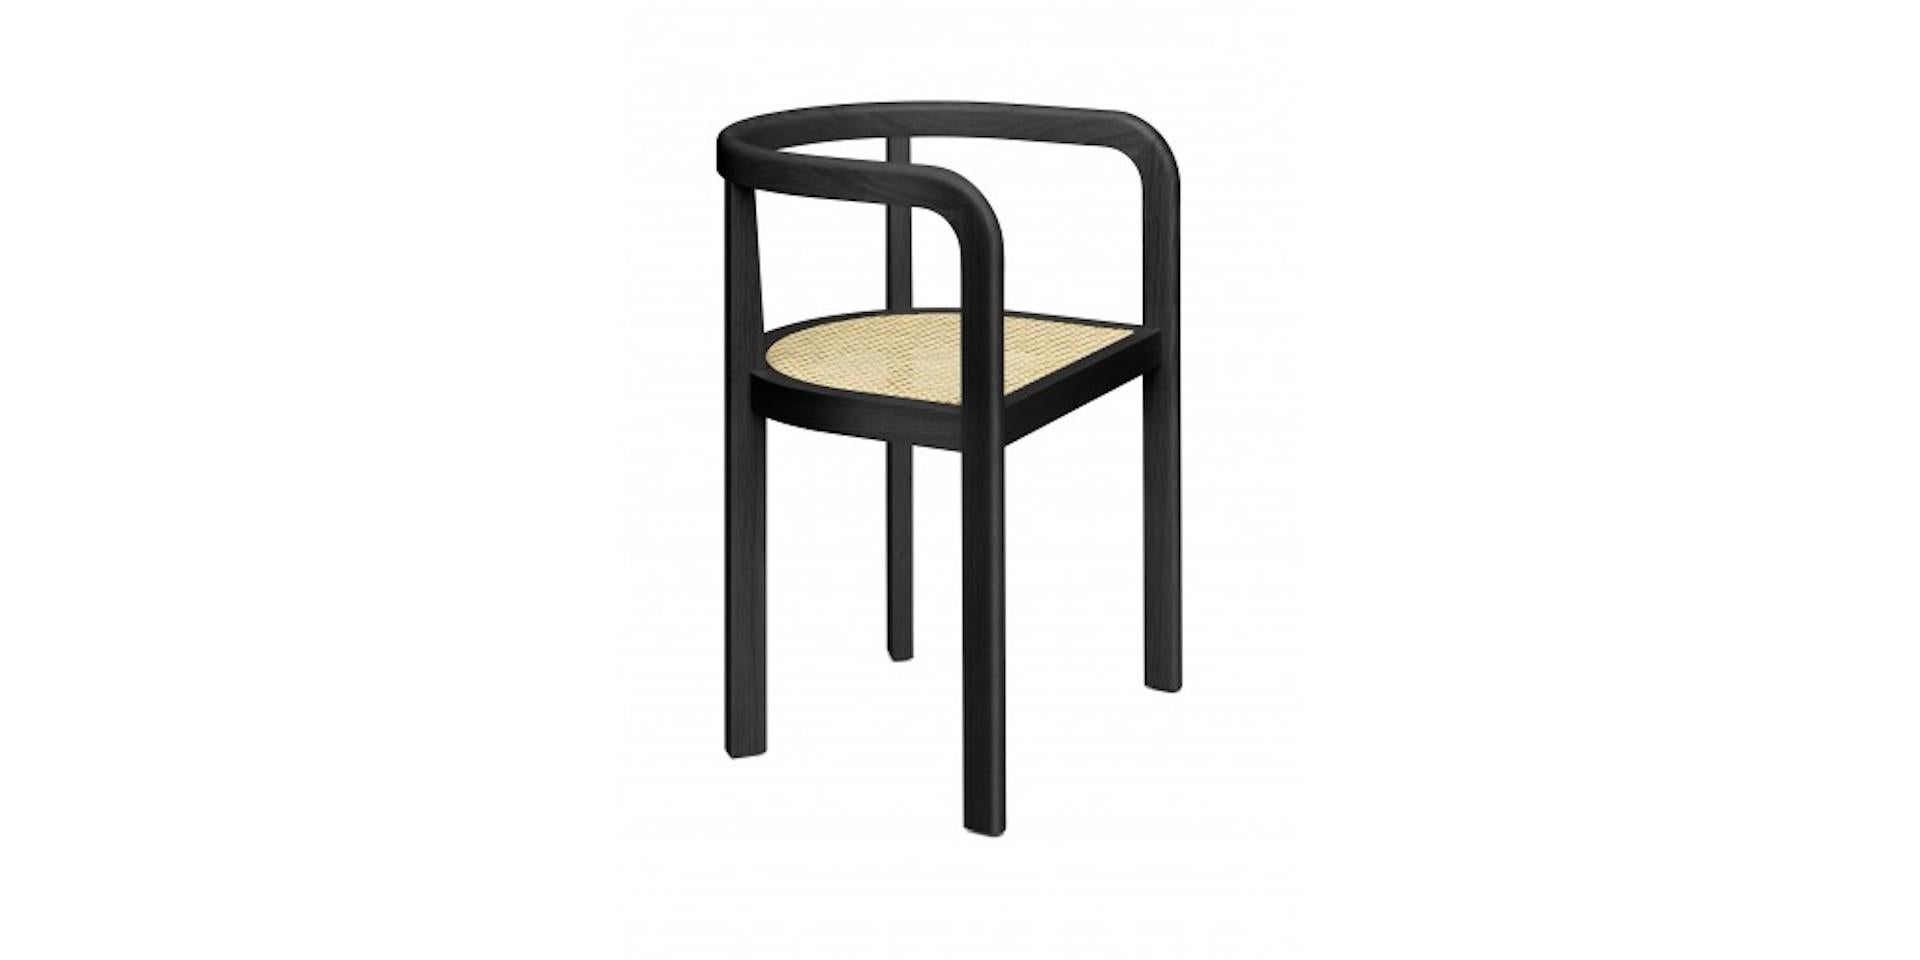 Conçue en 1926, la chaise STUTTGART illustre la géométrie et la rationalité inhérentes à l'esthétique expressive de Richard Herre. Fabriqué en bois massif, le dossier incurvé caractéristique de STUTTGART incarne le savoir-faire traditionnel et